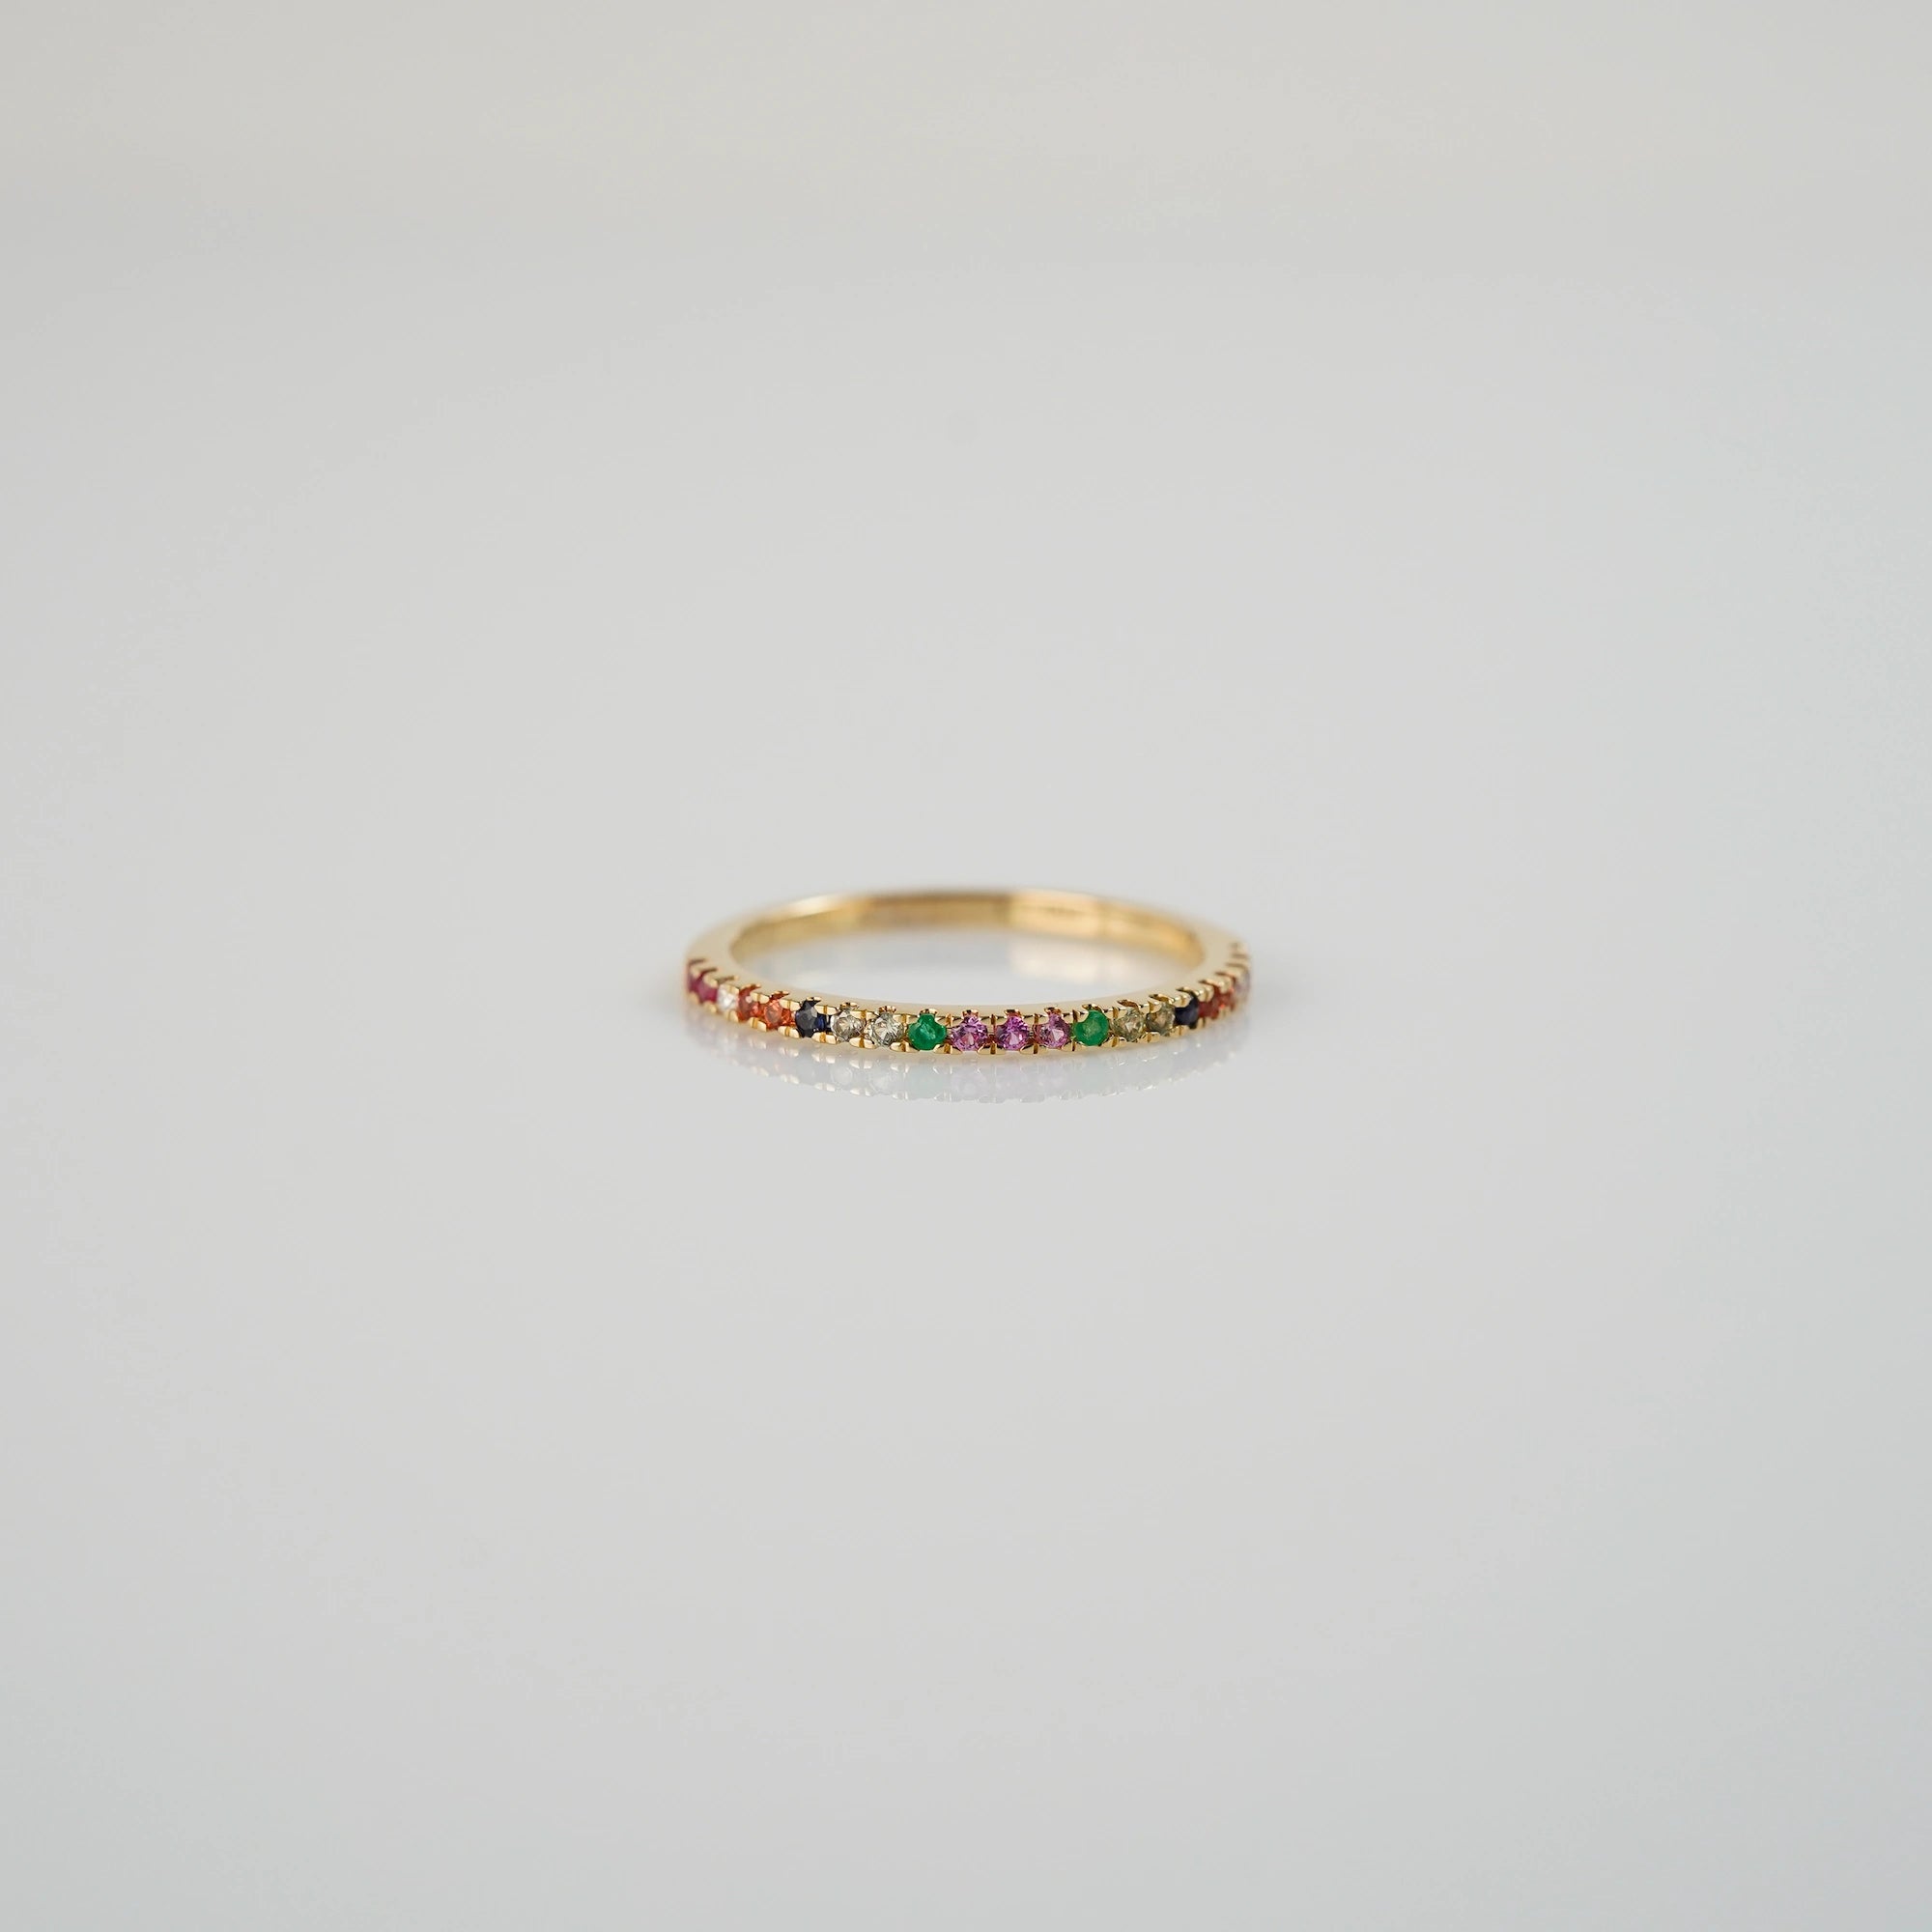 Produktfoto des liegenden Memoire-Rings mit einem Rainbow-Setting aus verschiedenen Edelsteinen mit einem bunten Farbspiel